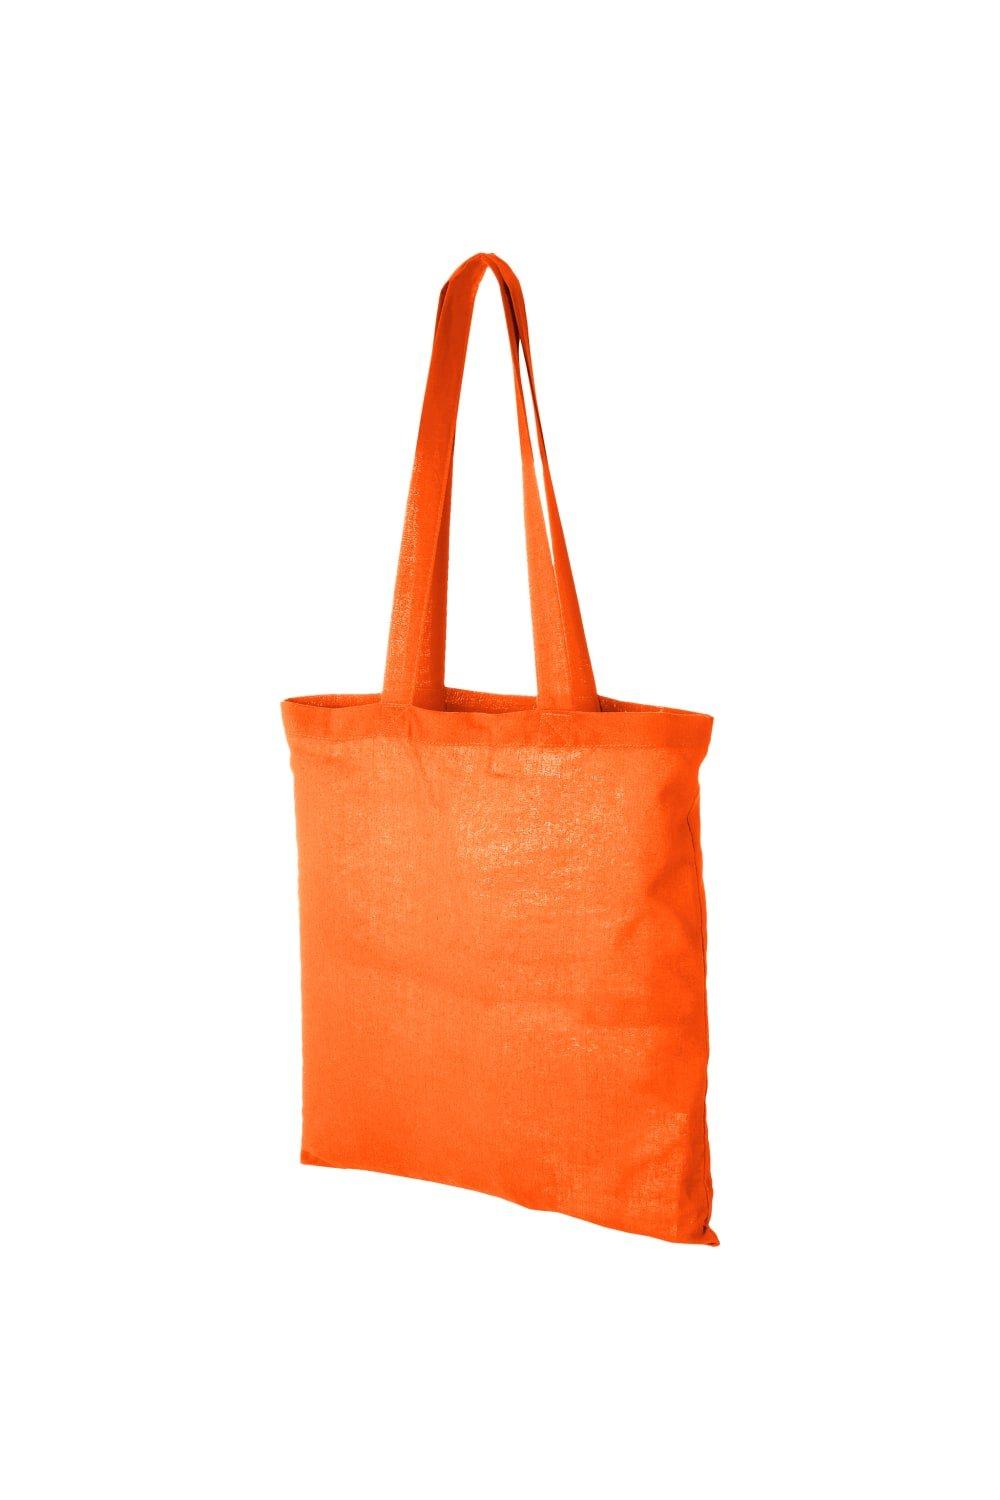 Хлопковая сумка-тоут Carolina Bullet, оранжевый мешочек сумка подарочный винового года каролина